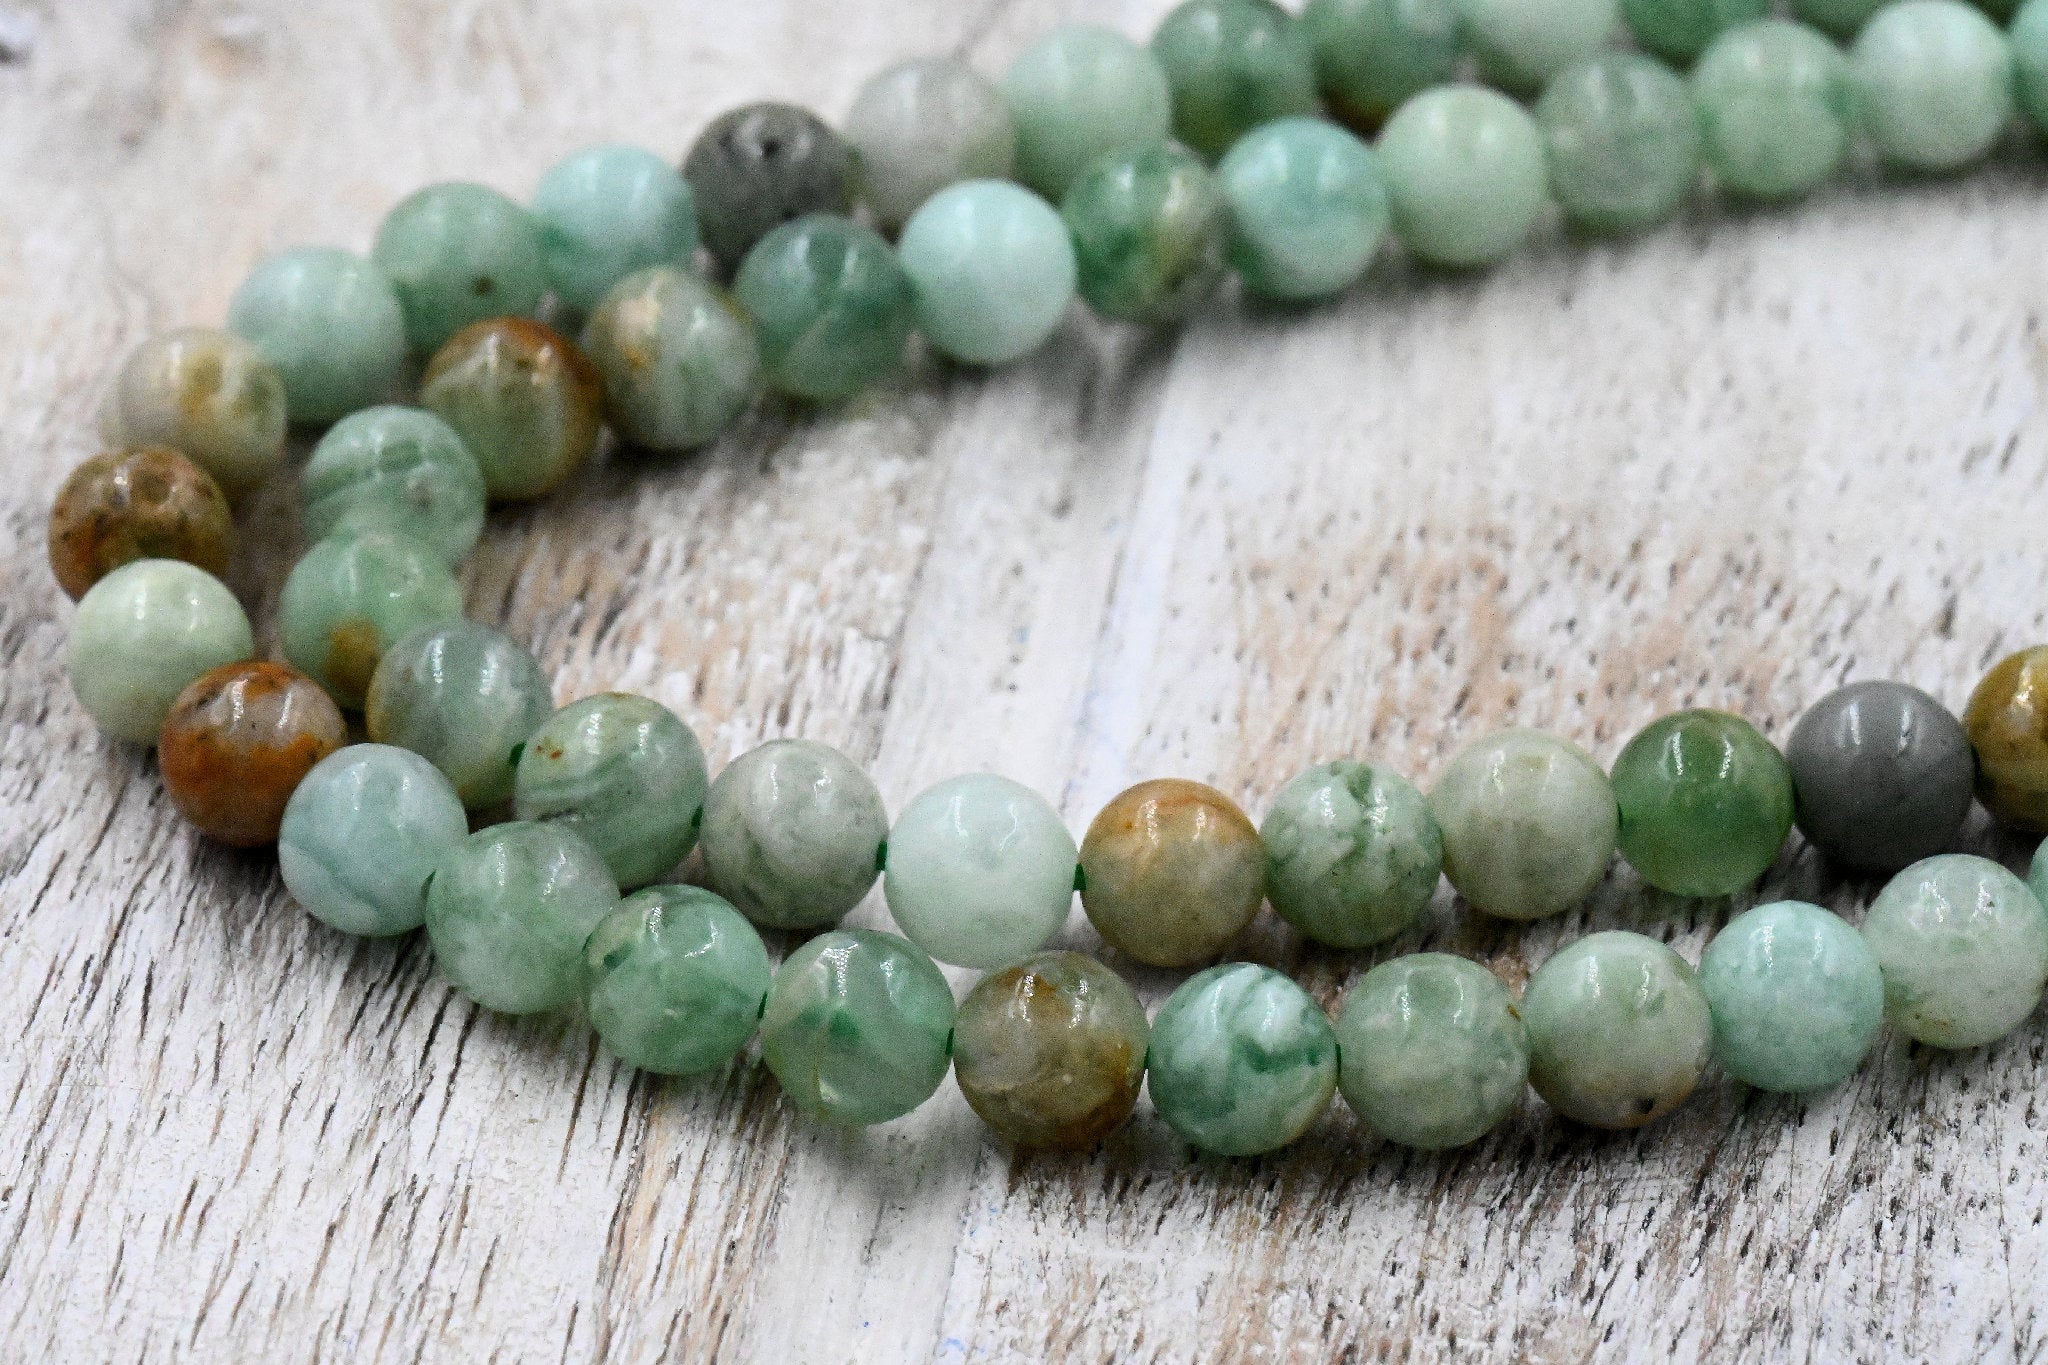 Green Kyalite Round Beads